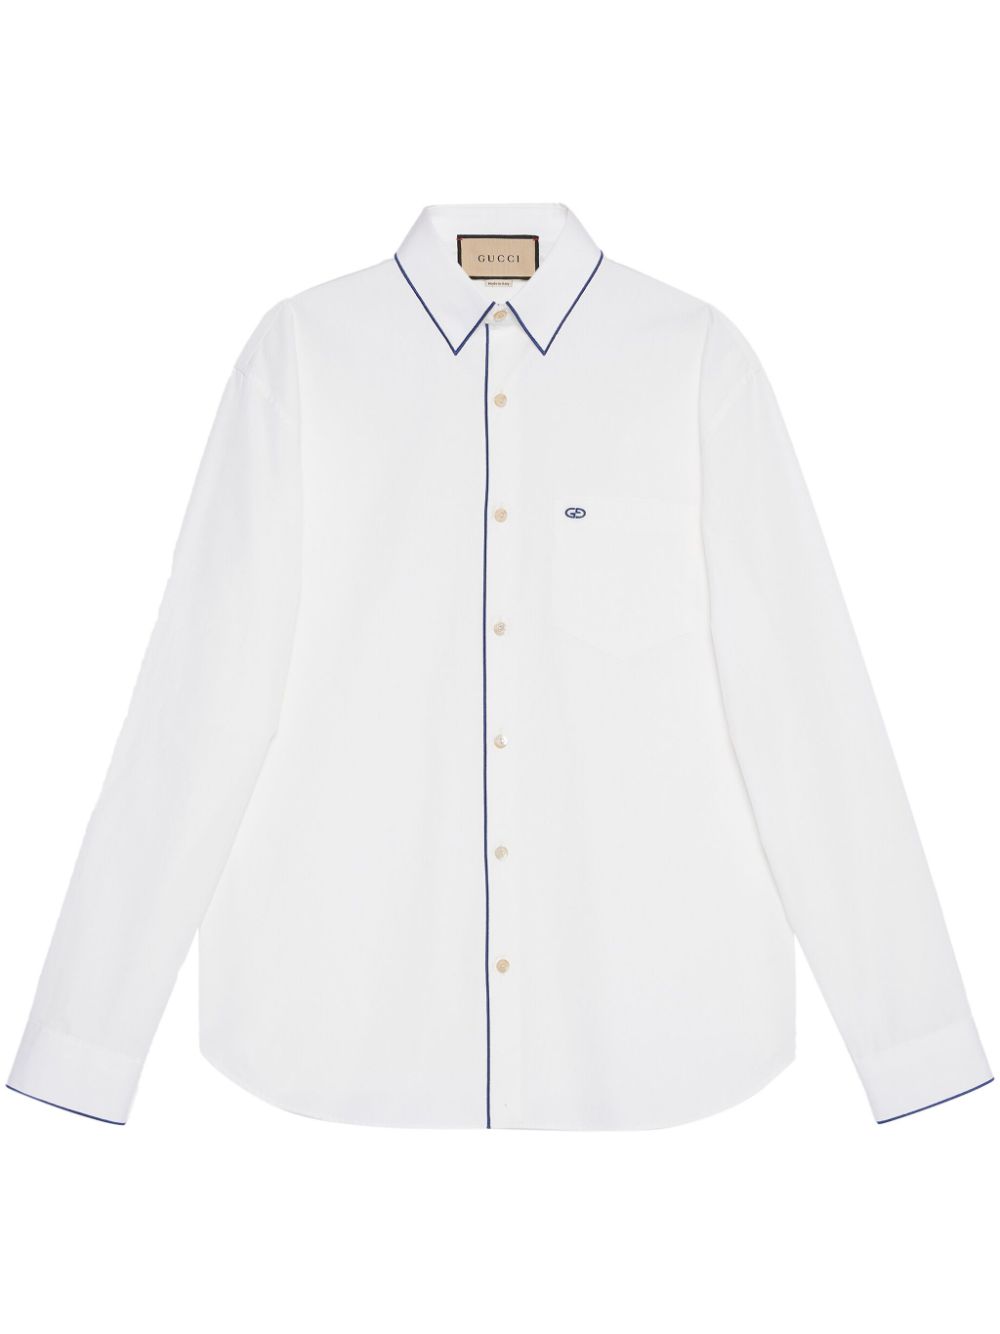 Gucci 762169 Man NATURAL WHITE/MIX Shirts - Zuklat